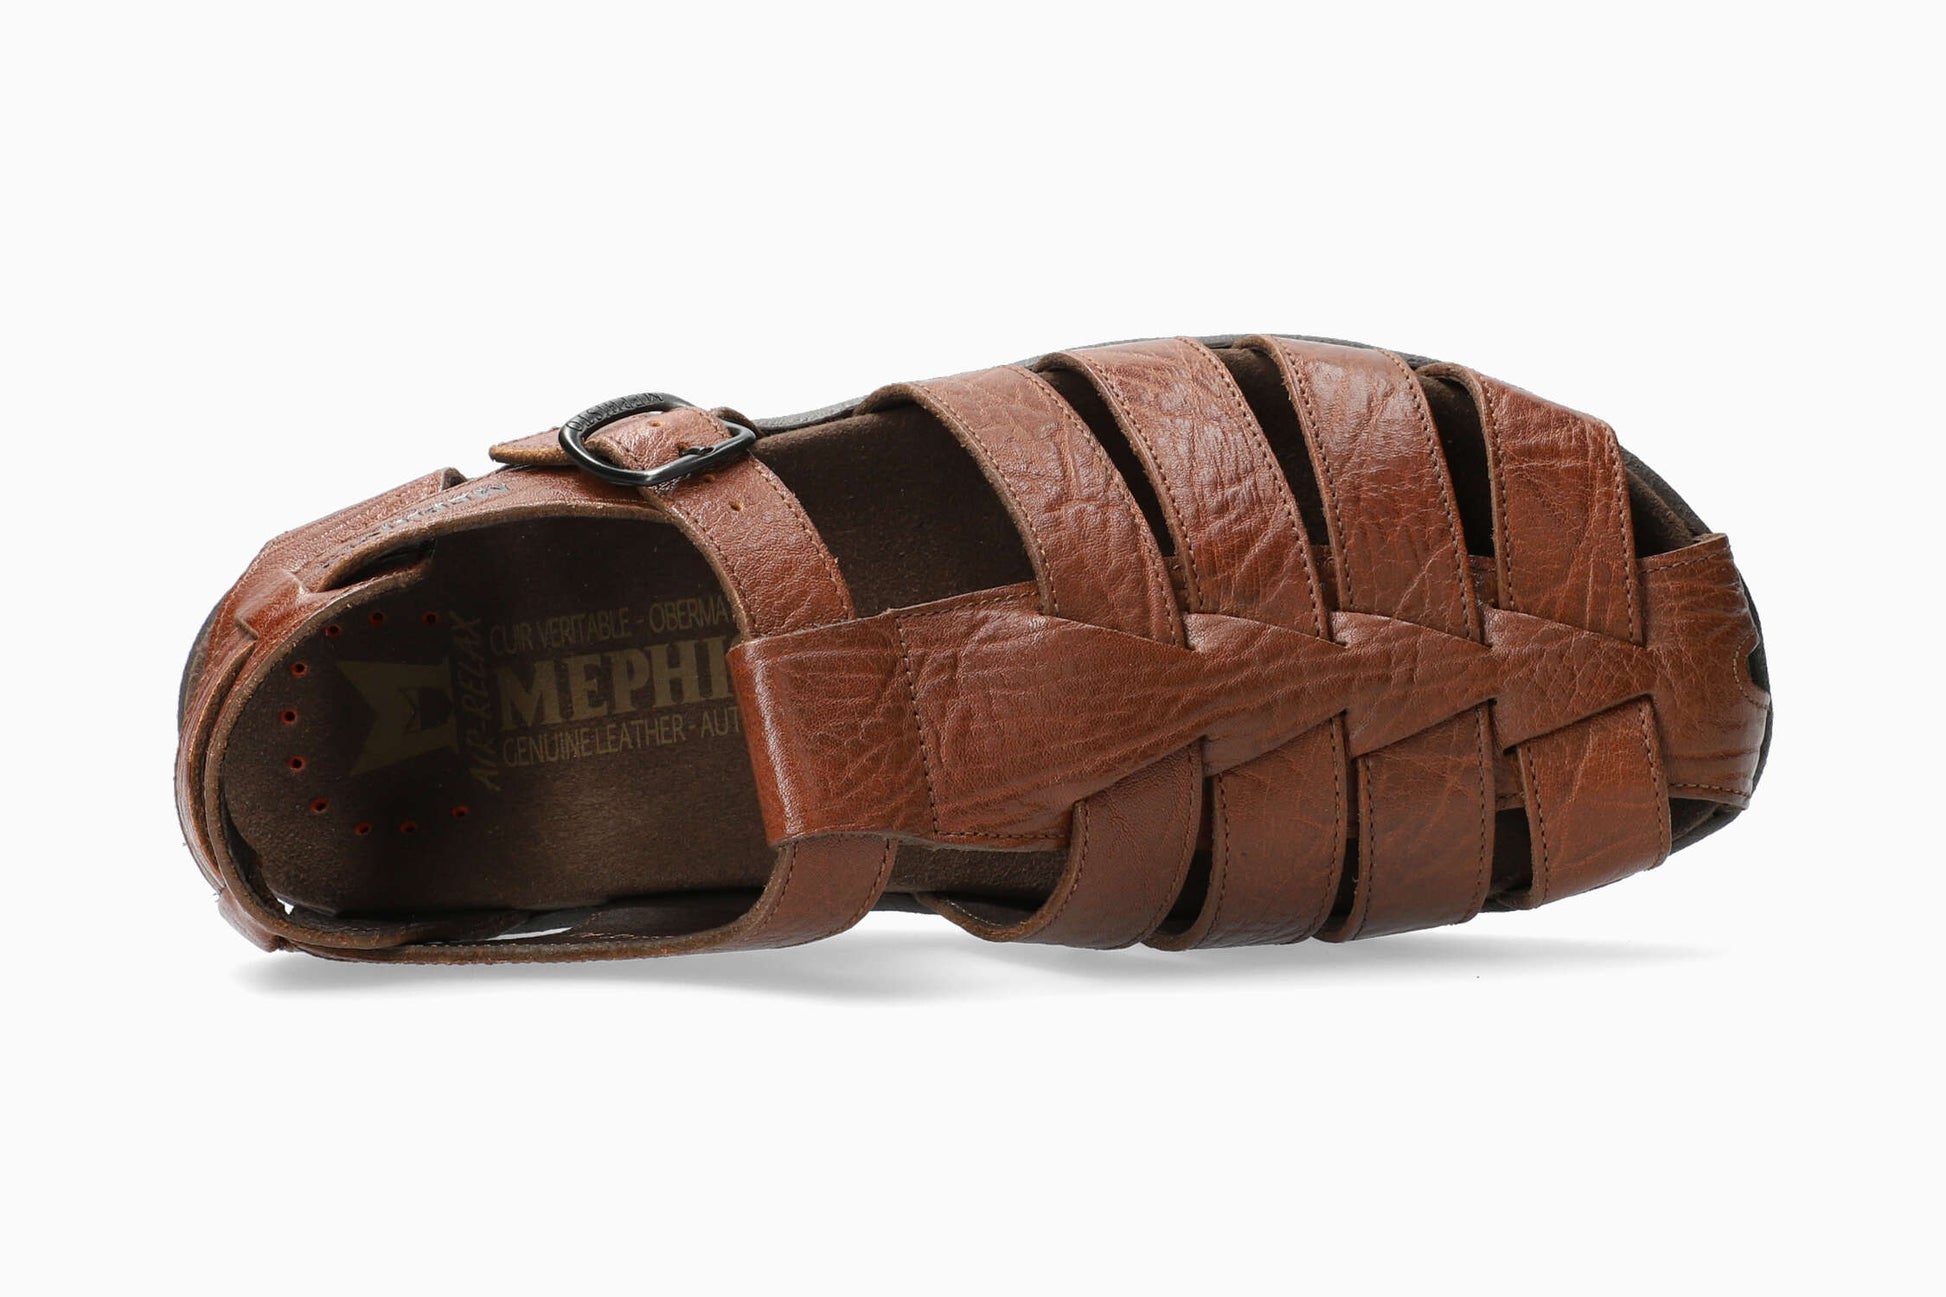 Mephisto Sam Men's Sandal Desert Top